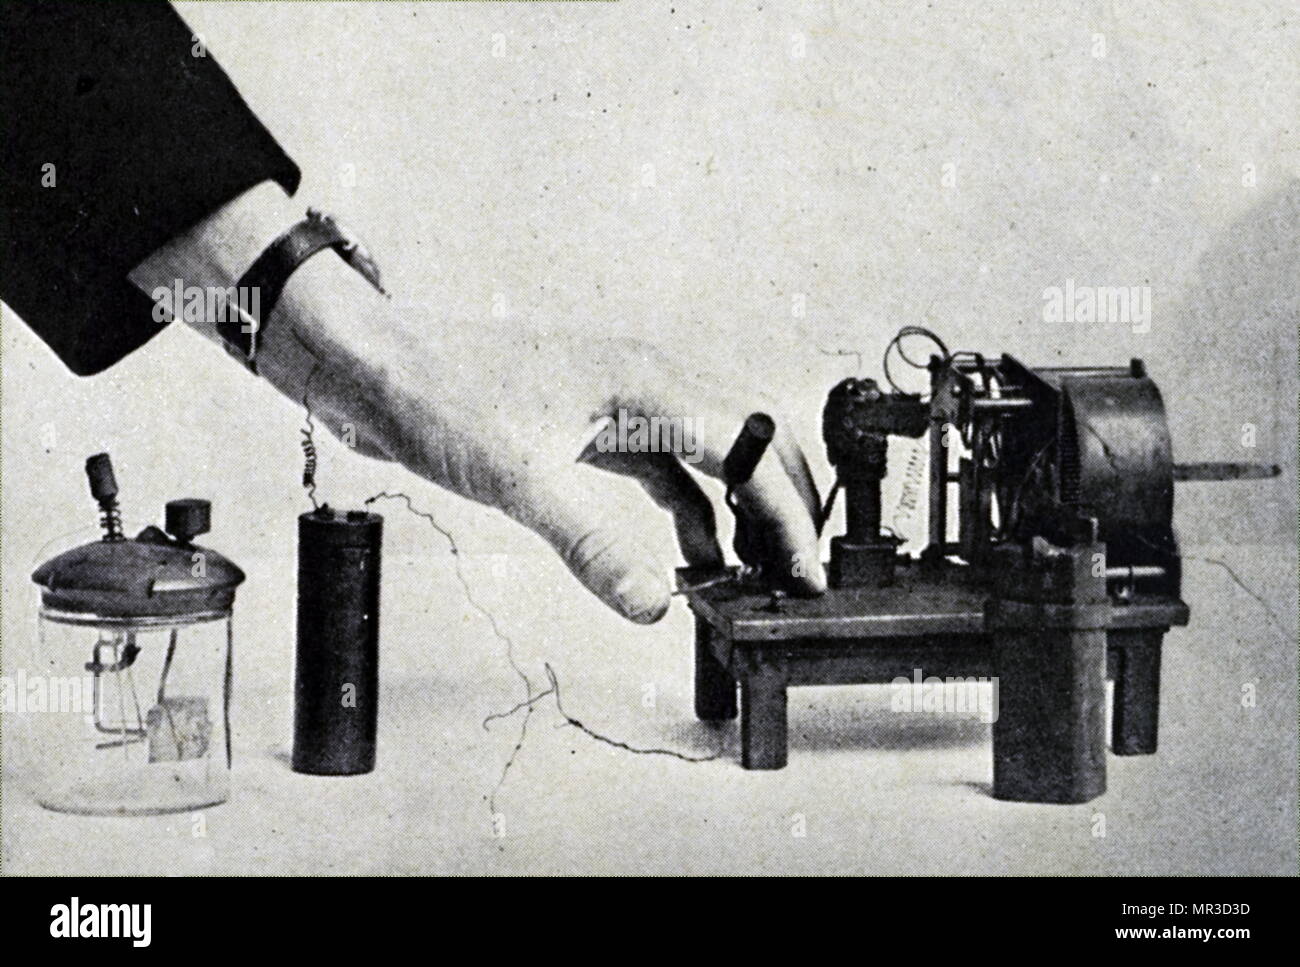 Foto von, was gedacht wird, die erste drahtlose eingestellt werden erfunden von David Edward Hughes. David Edward Hughes (1831-1900) die britisch-amerikanische Erfinder, praktische Experimenter, und Professor für Musik für seine Arbeit auf dem Drucksystem Fernschreiber und das Mikrofon bekannt. Vom 19. Jahrhundert Stockfoto